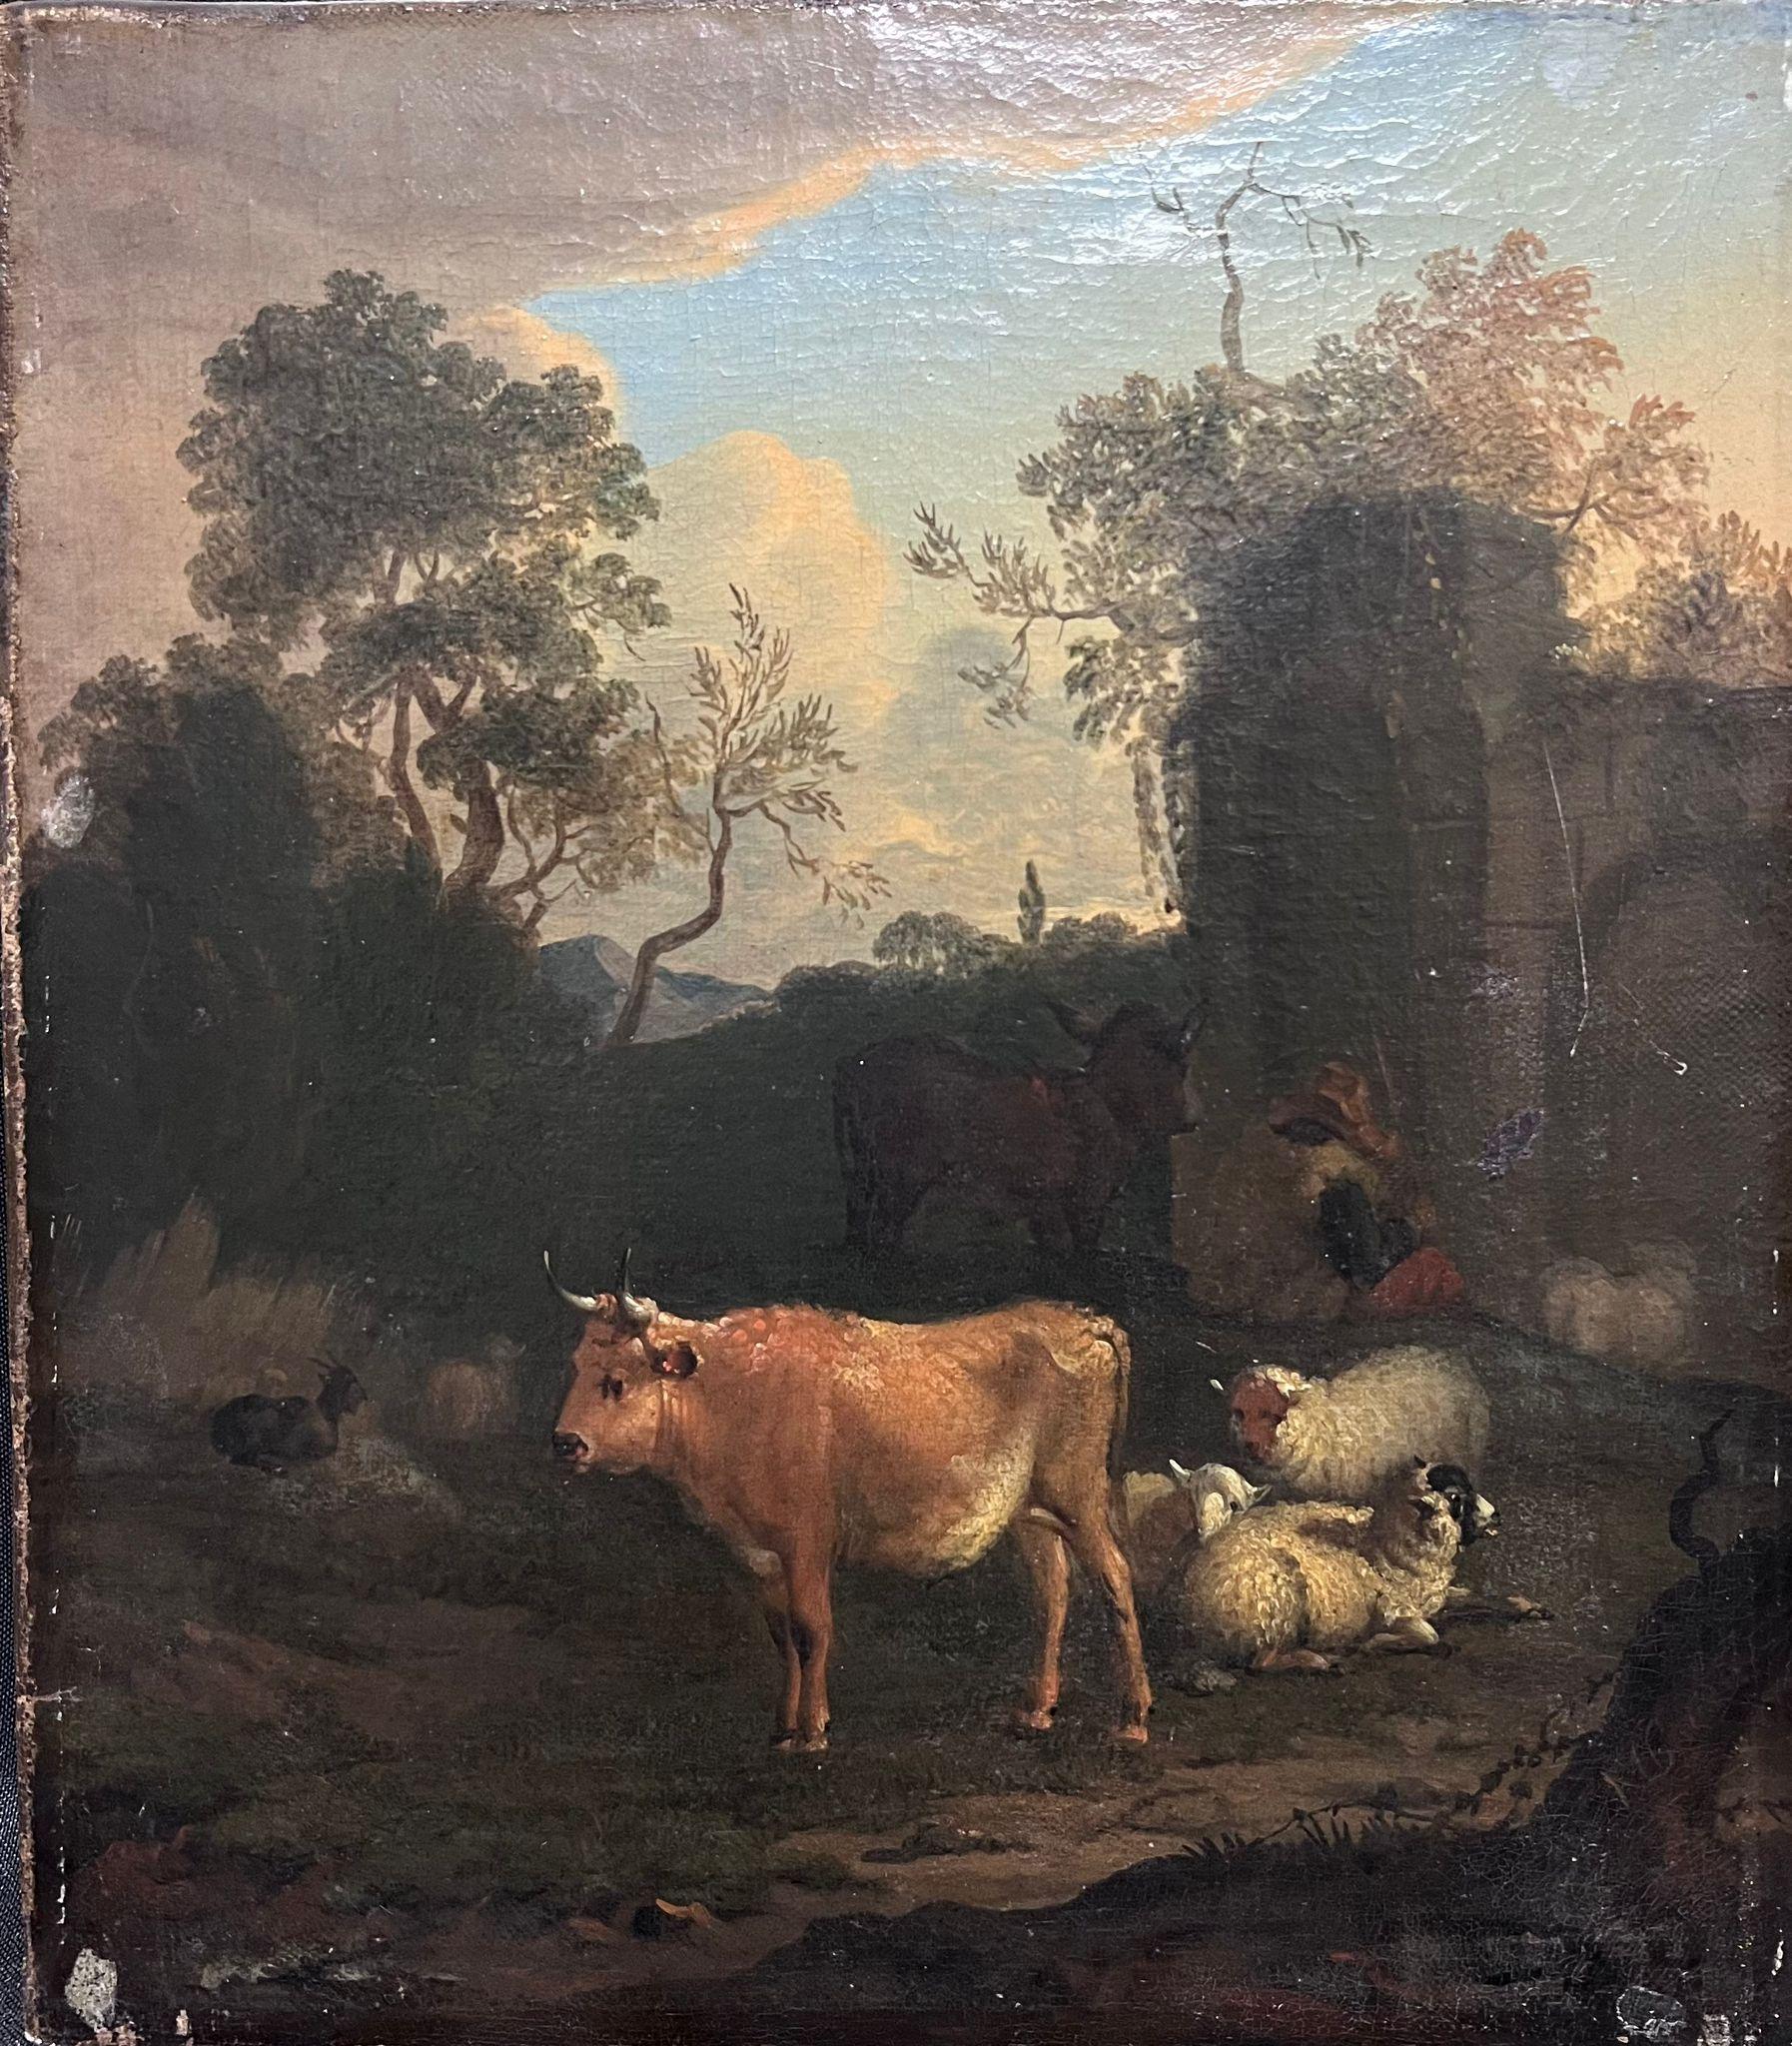 Fine peinture à l'huile hollandaise du 18ème siècle - Cattle & Sheep Ancient Ruines - Painting de 18th Dutch Old Master